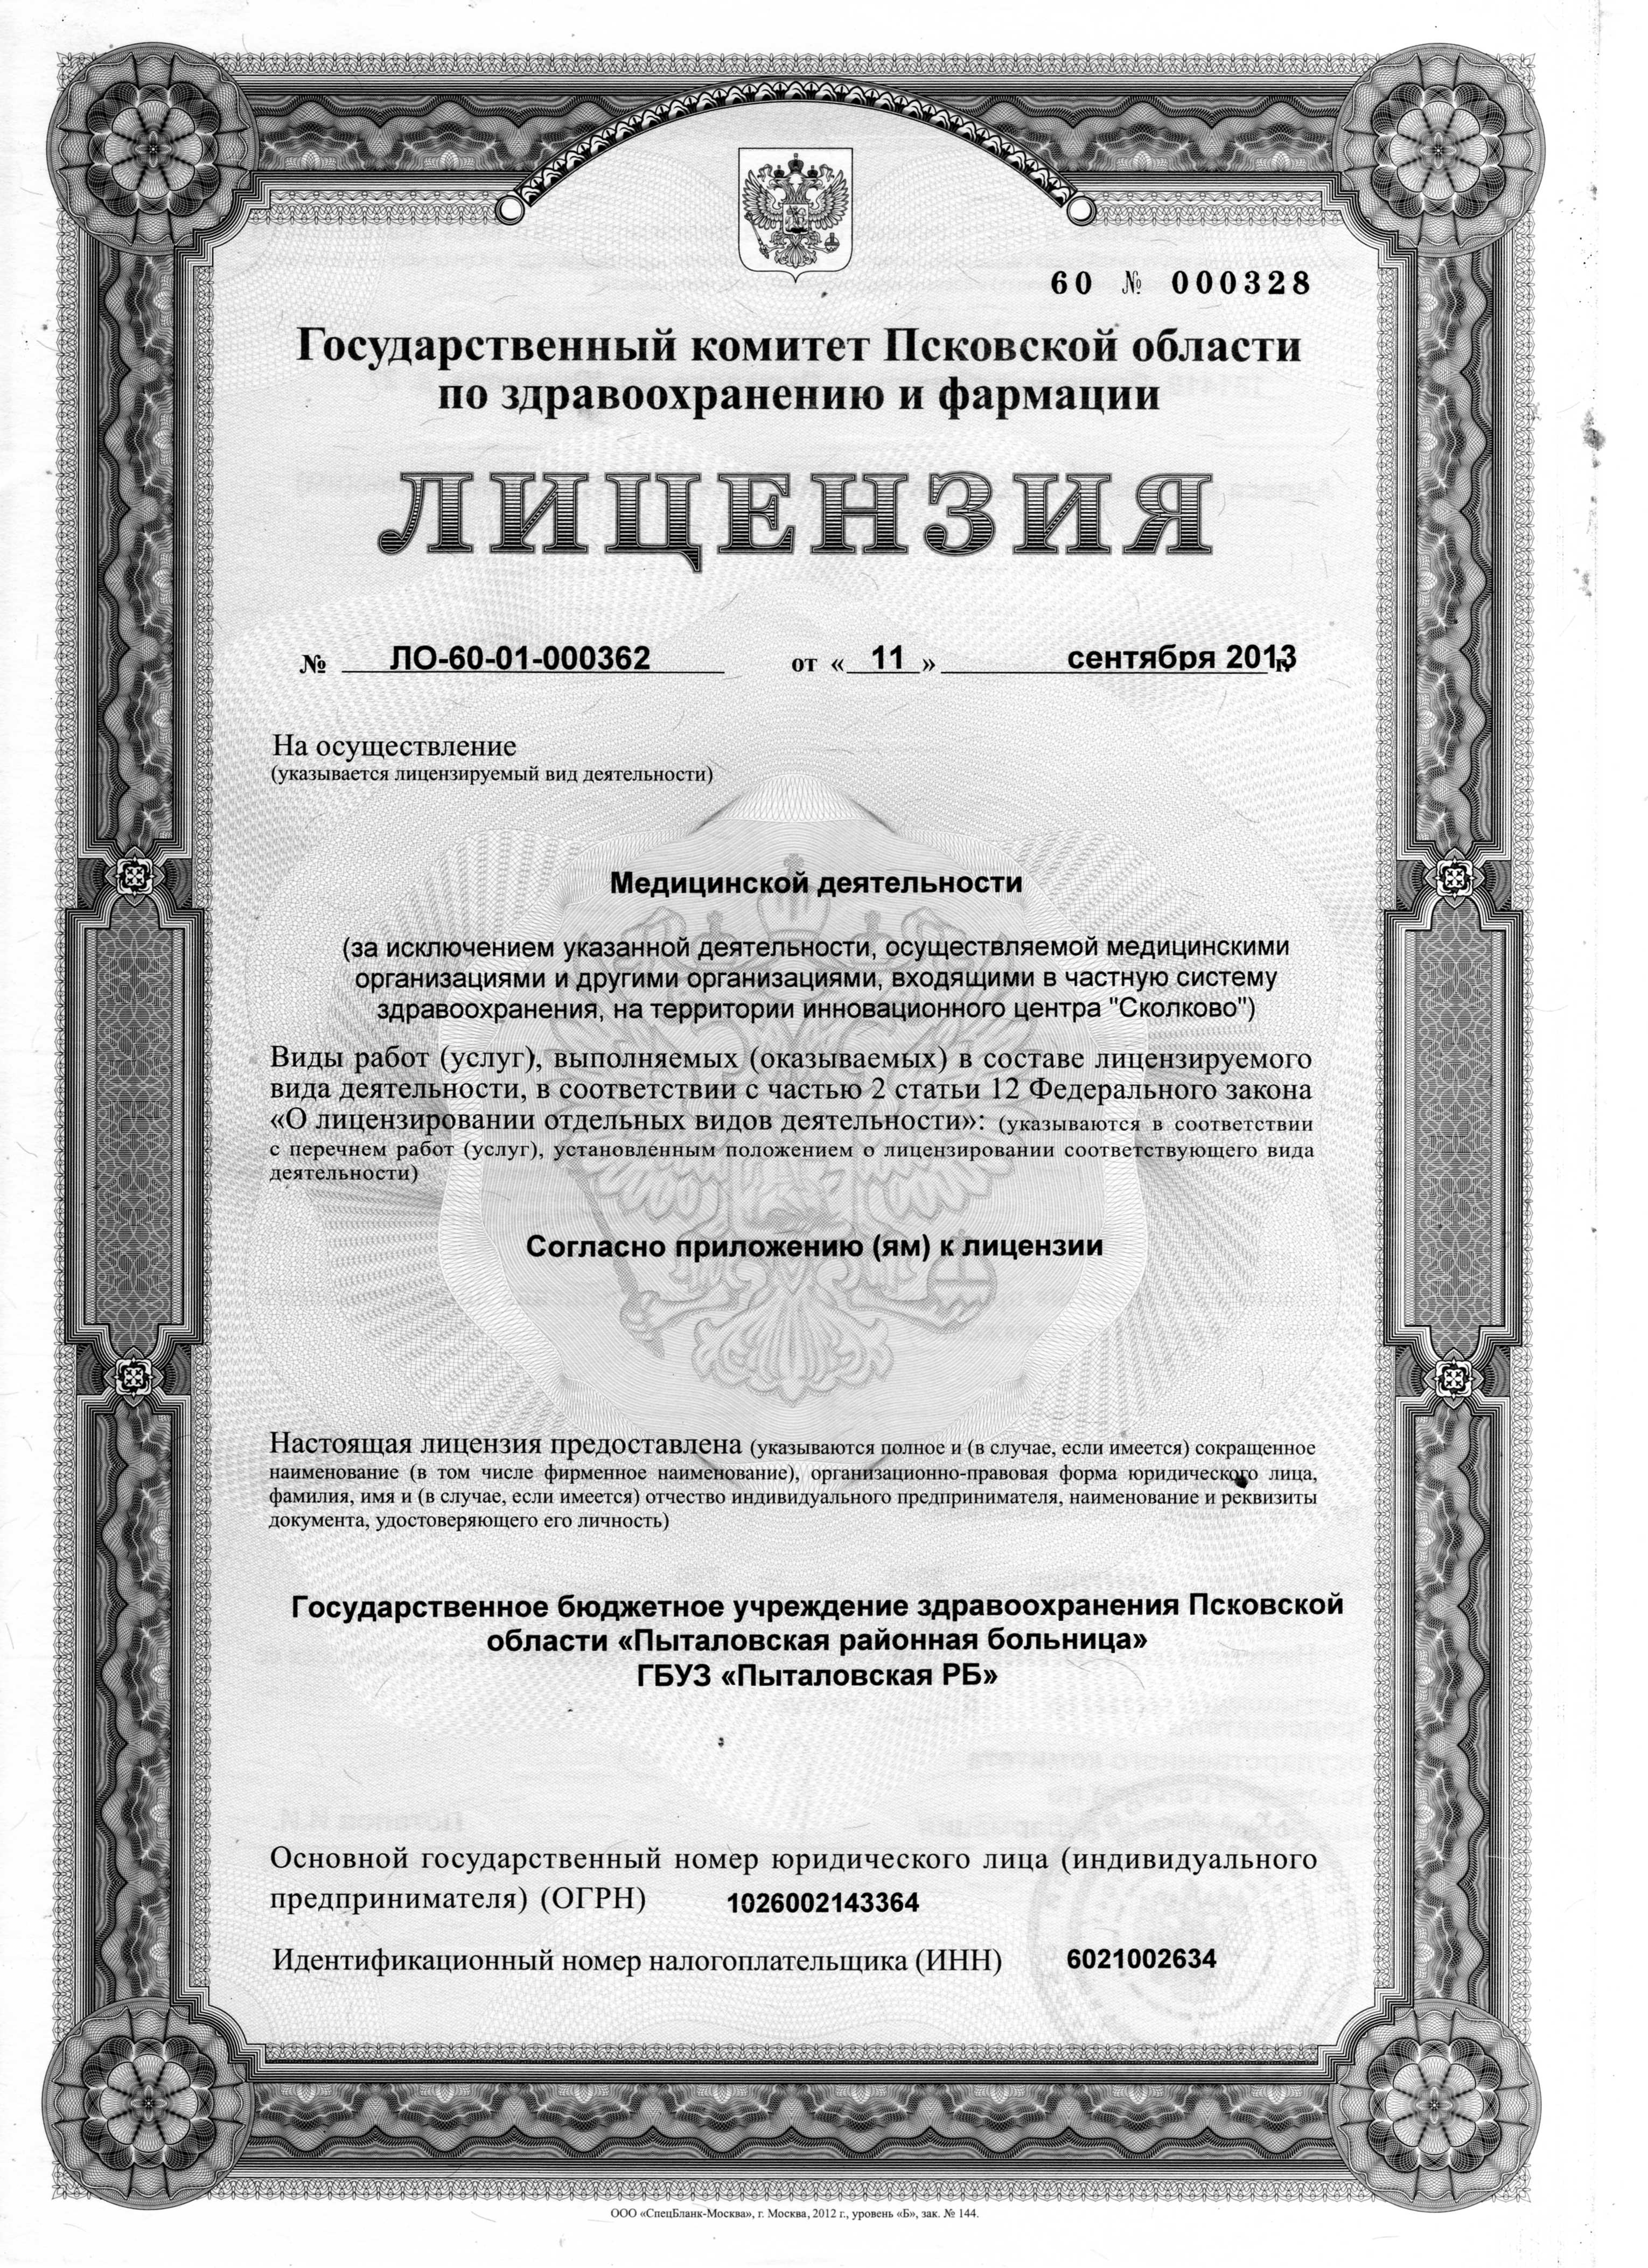 Лицензия № 60-01-000362 от 11 сентября 2013 года. Выдана Государственным комитетом Псковской области по здравоохранению и фармации.